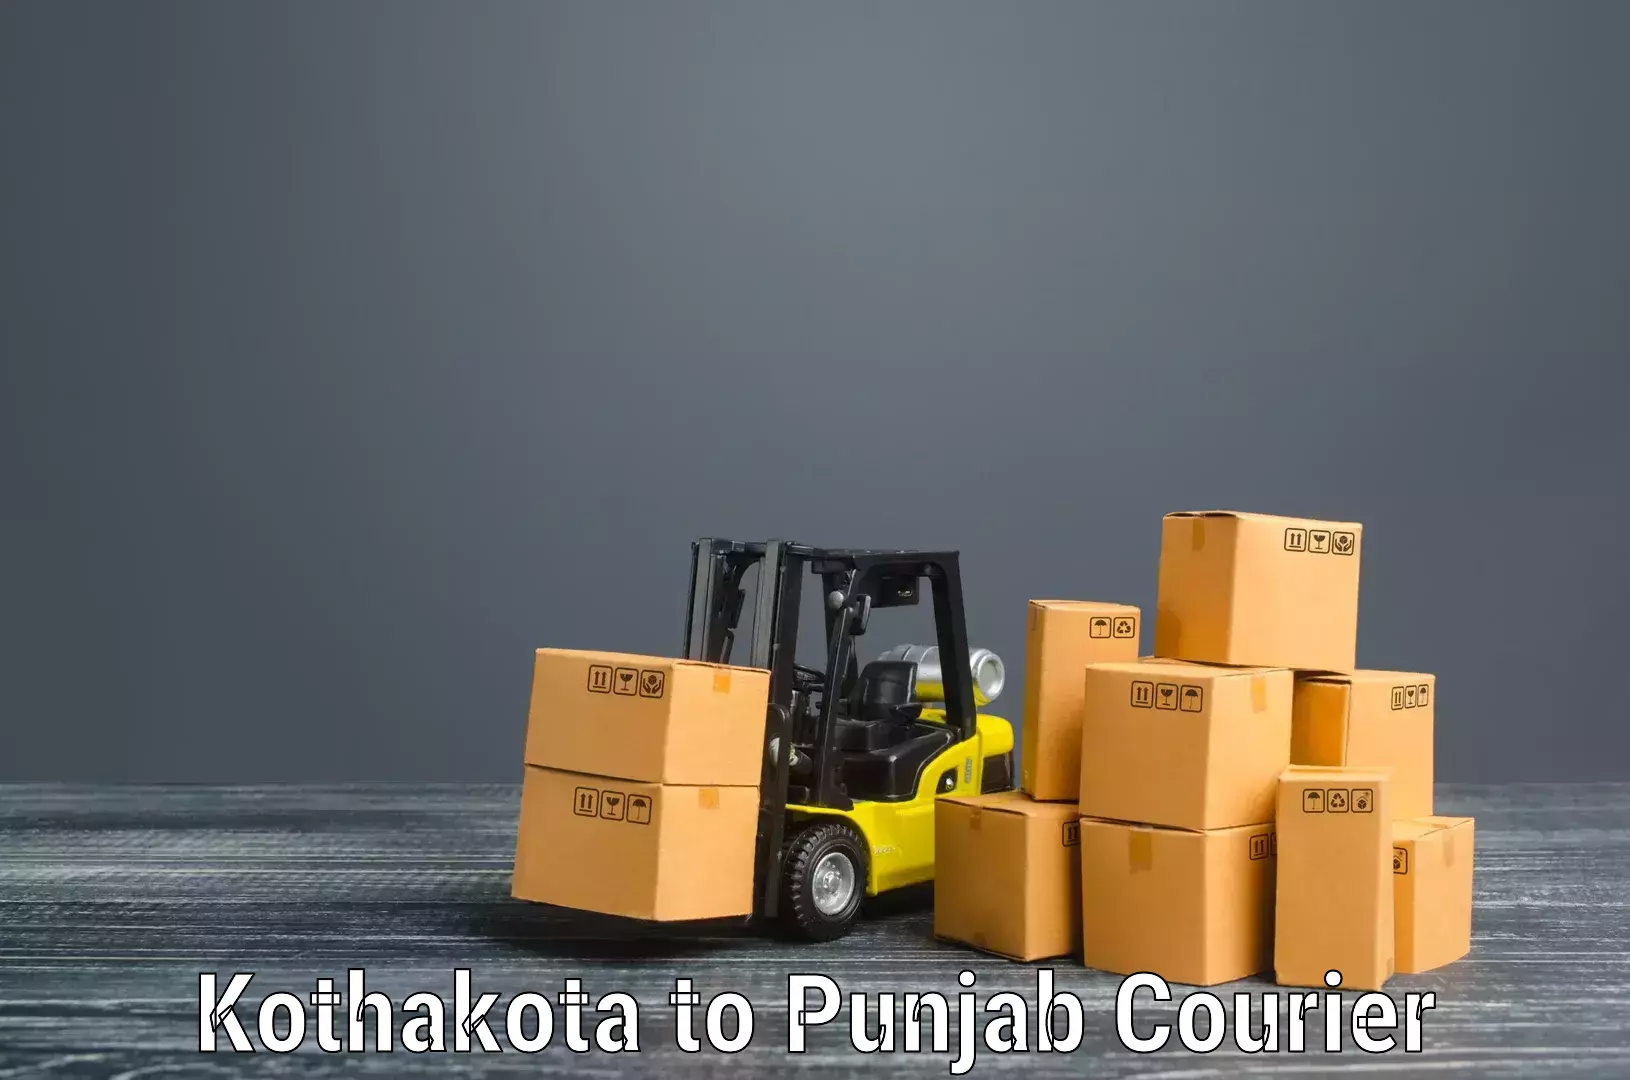 Furniture moving specialists Kothakota to Talwara